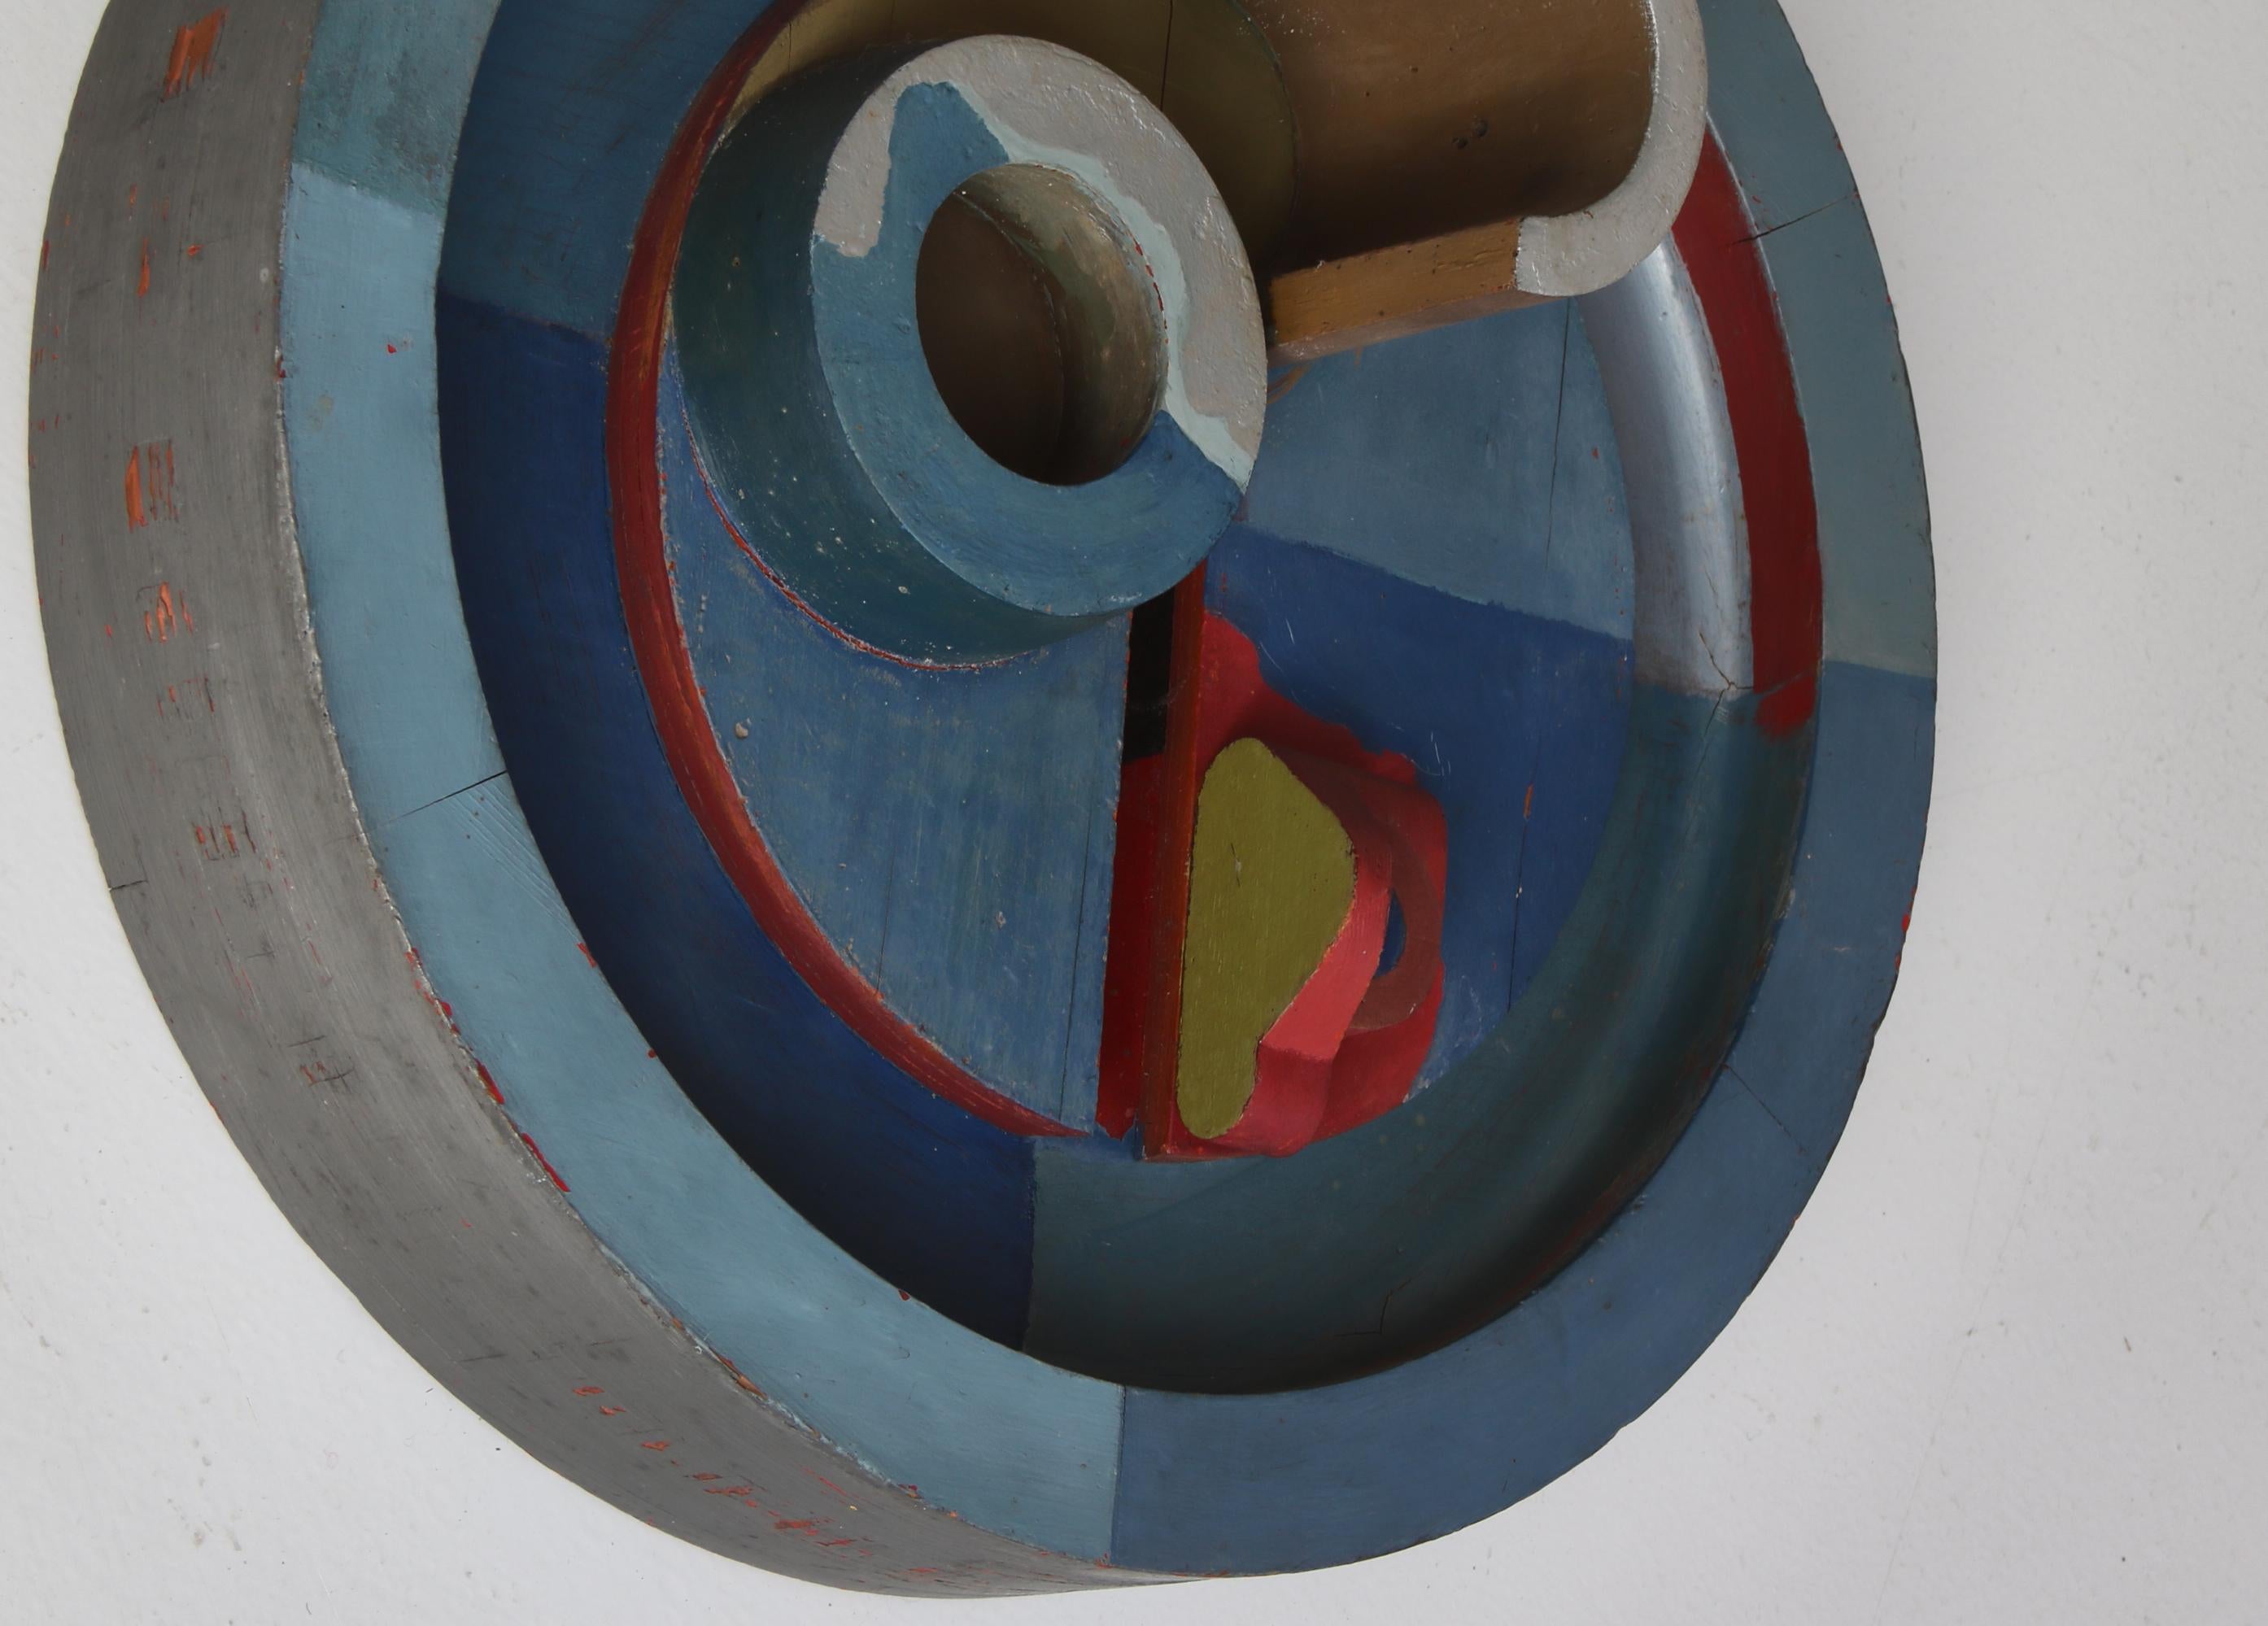 Œuvre d'art abstraite ludique réalisée par l'artiste danois Erik Lagoni Jakobsen dans son propre atelier en 1968. L'œuvre consiste en différents objets trouvés montés sur un cercle et peints. Il s'inspire du surréalisme et du dadaïsme et est typique